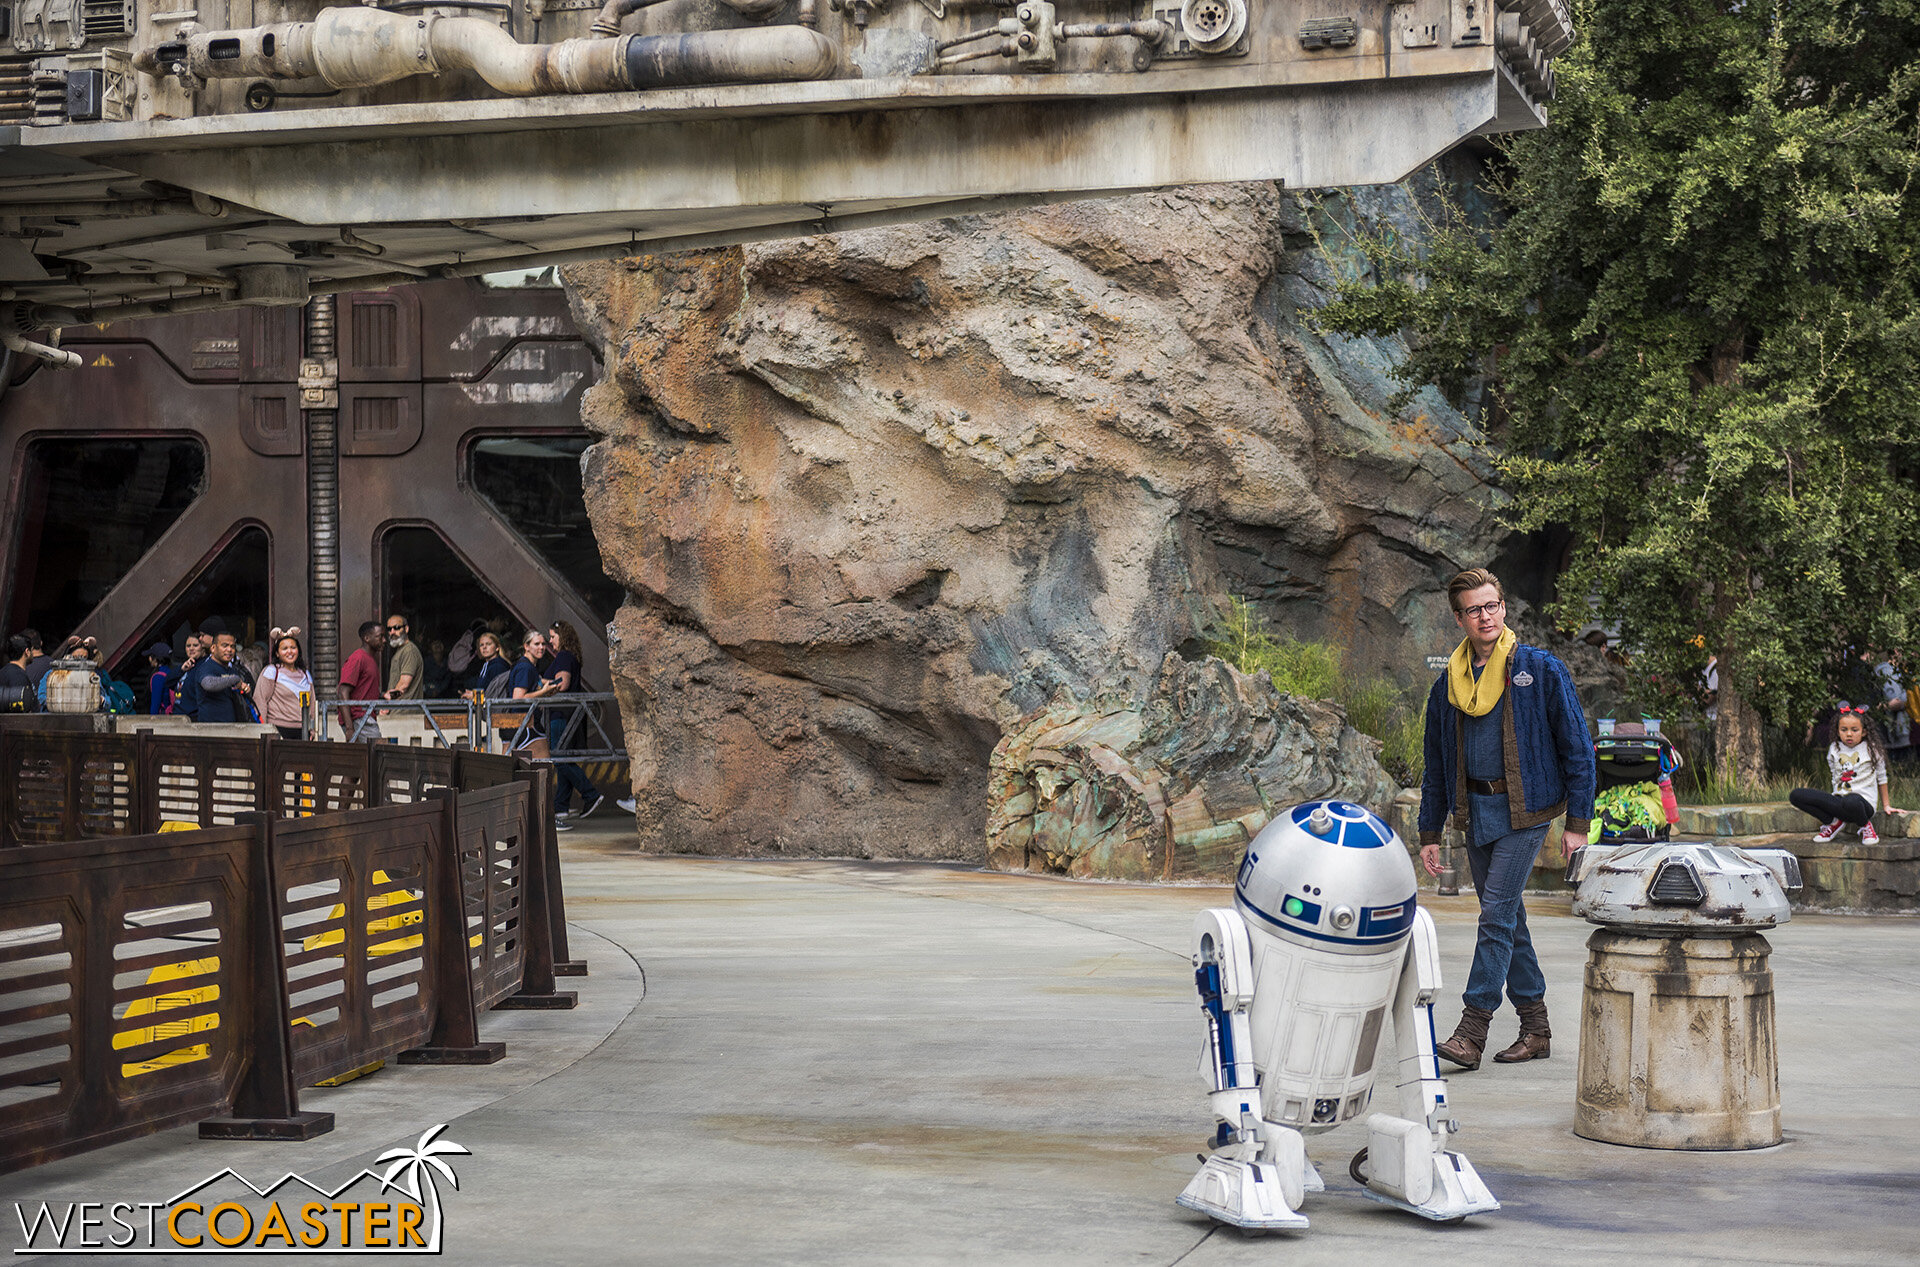  R2-D2 rolls around! 